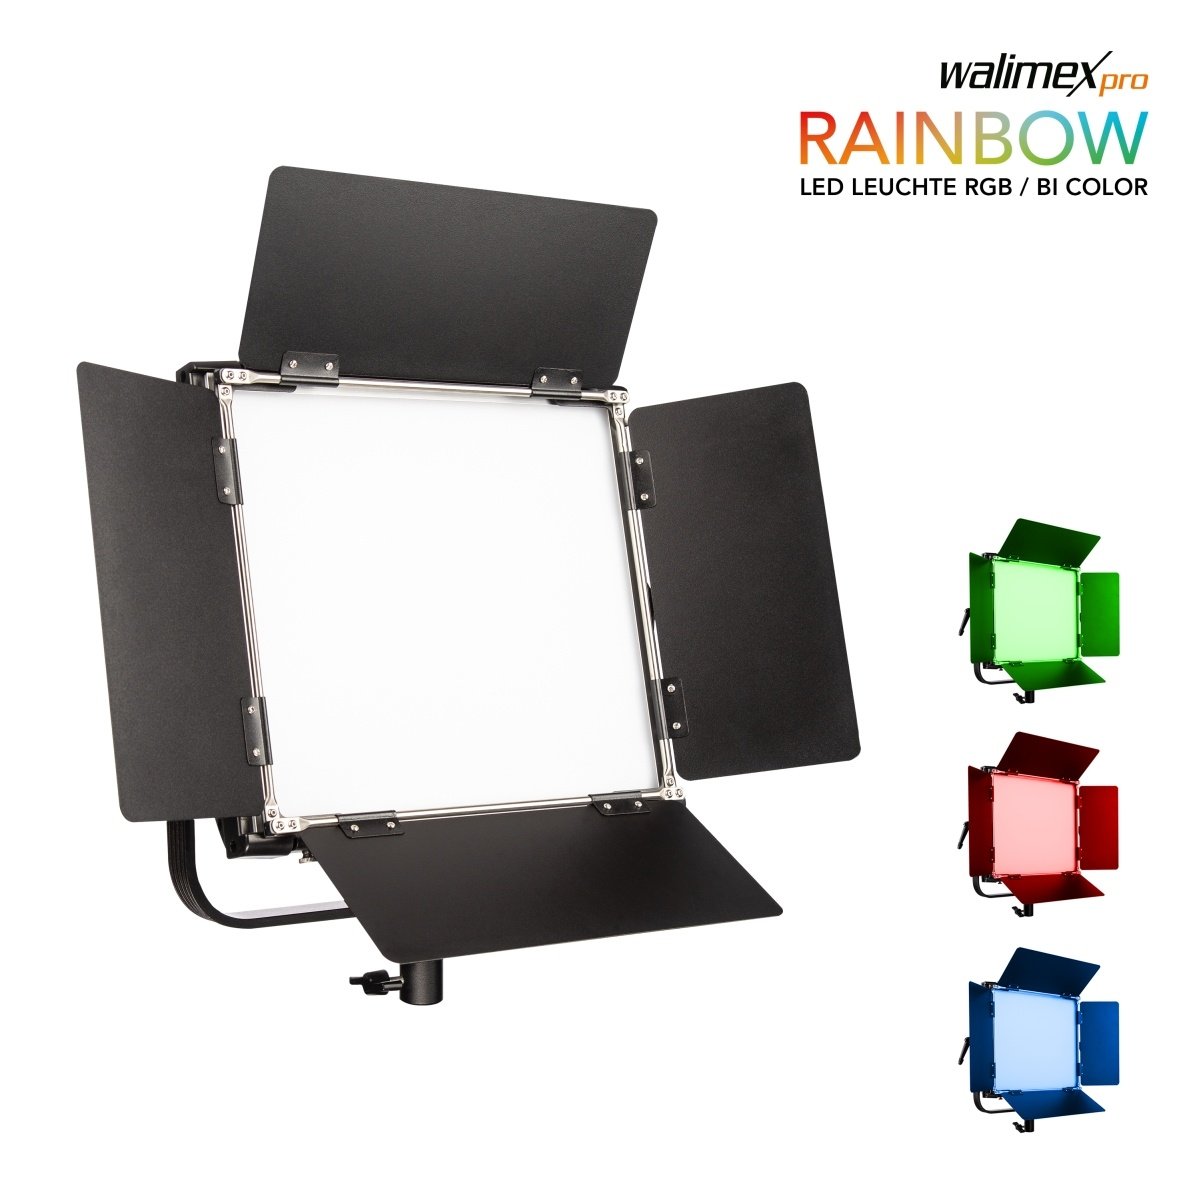 LED Square Lamp Rainbow RGB 50W   - walimex